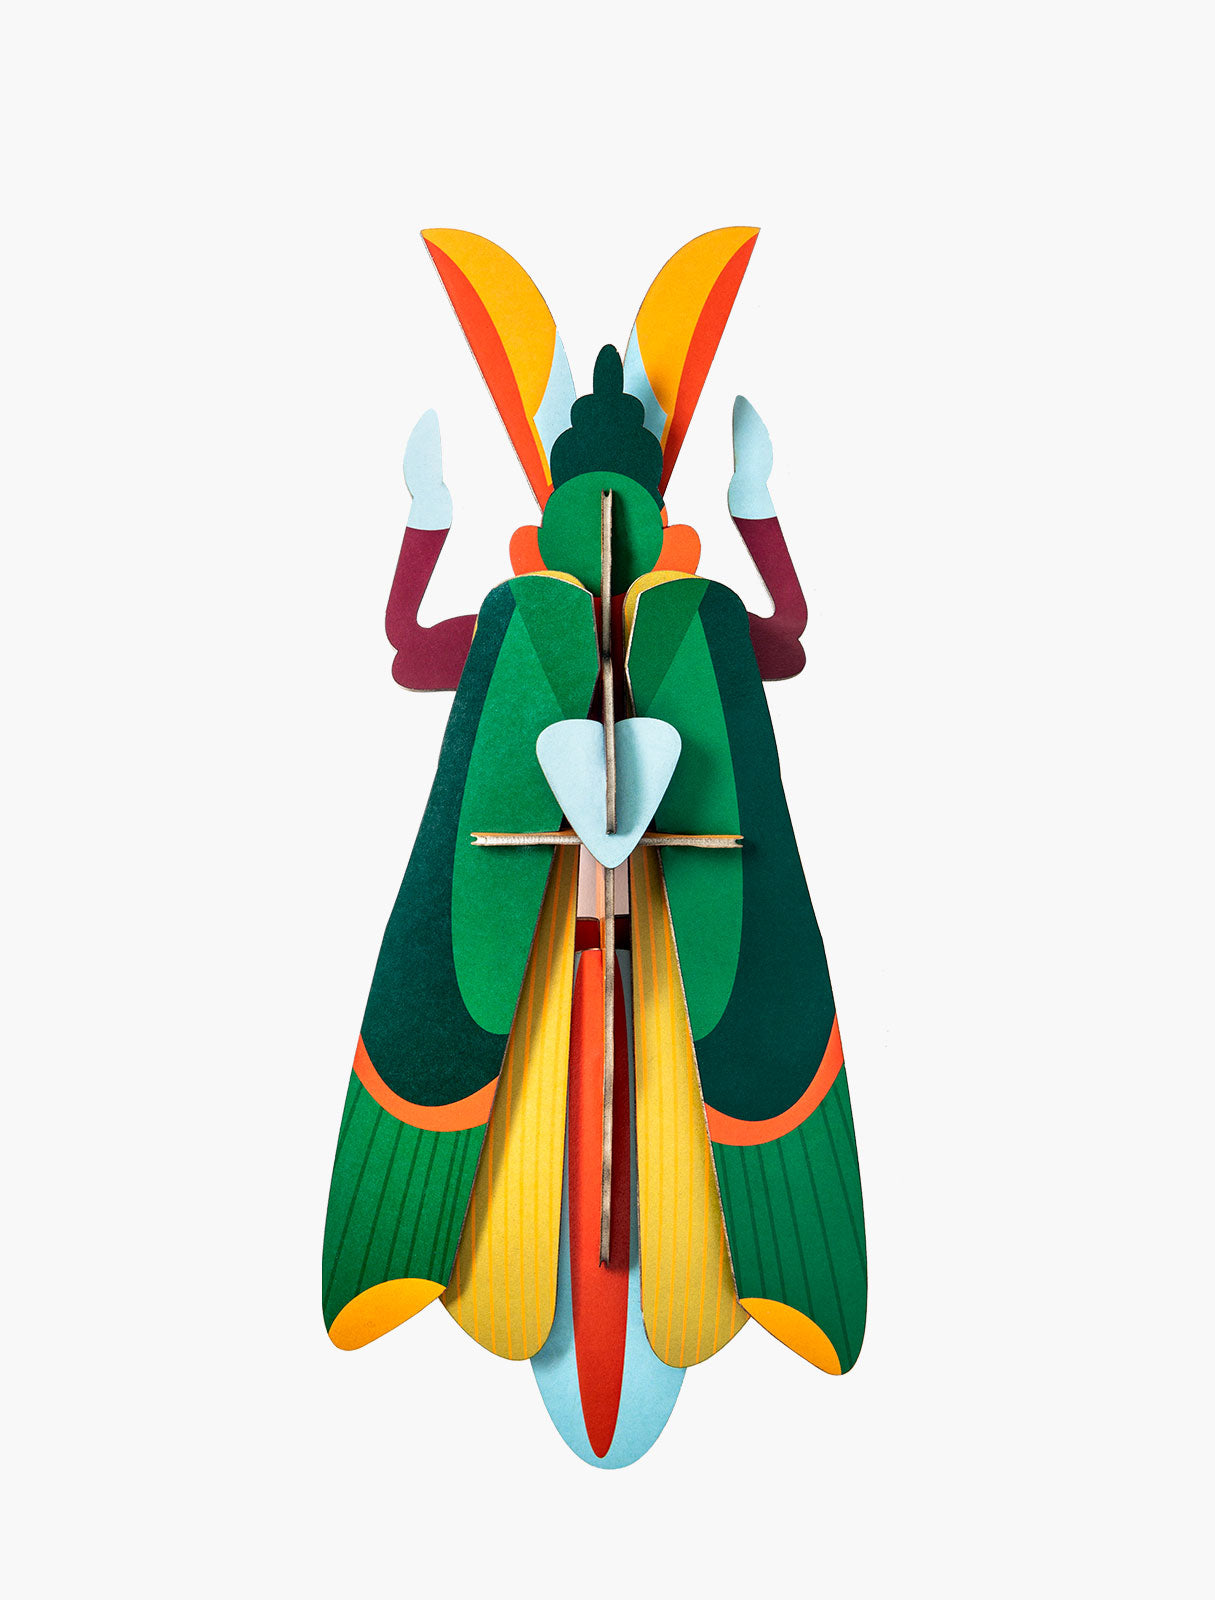 Studio ROOF – Nástěnná dekorace Grasshopper / luční koník